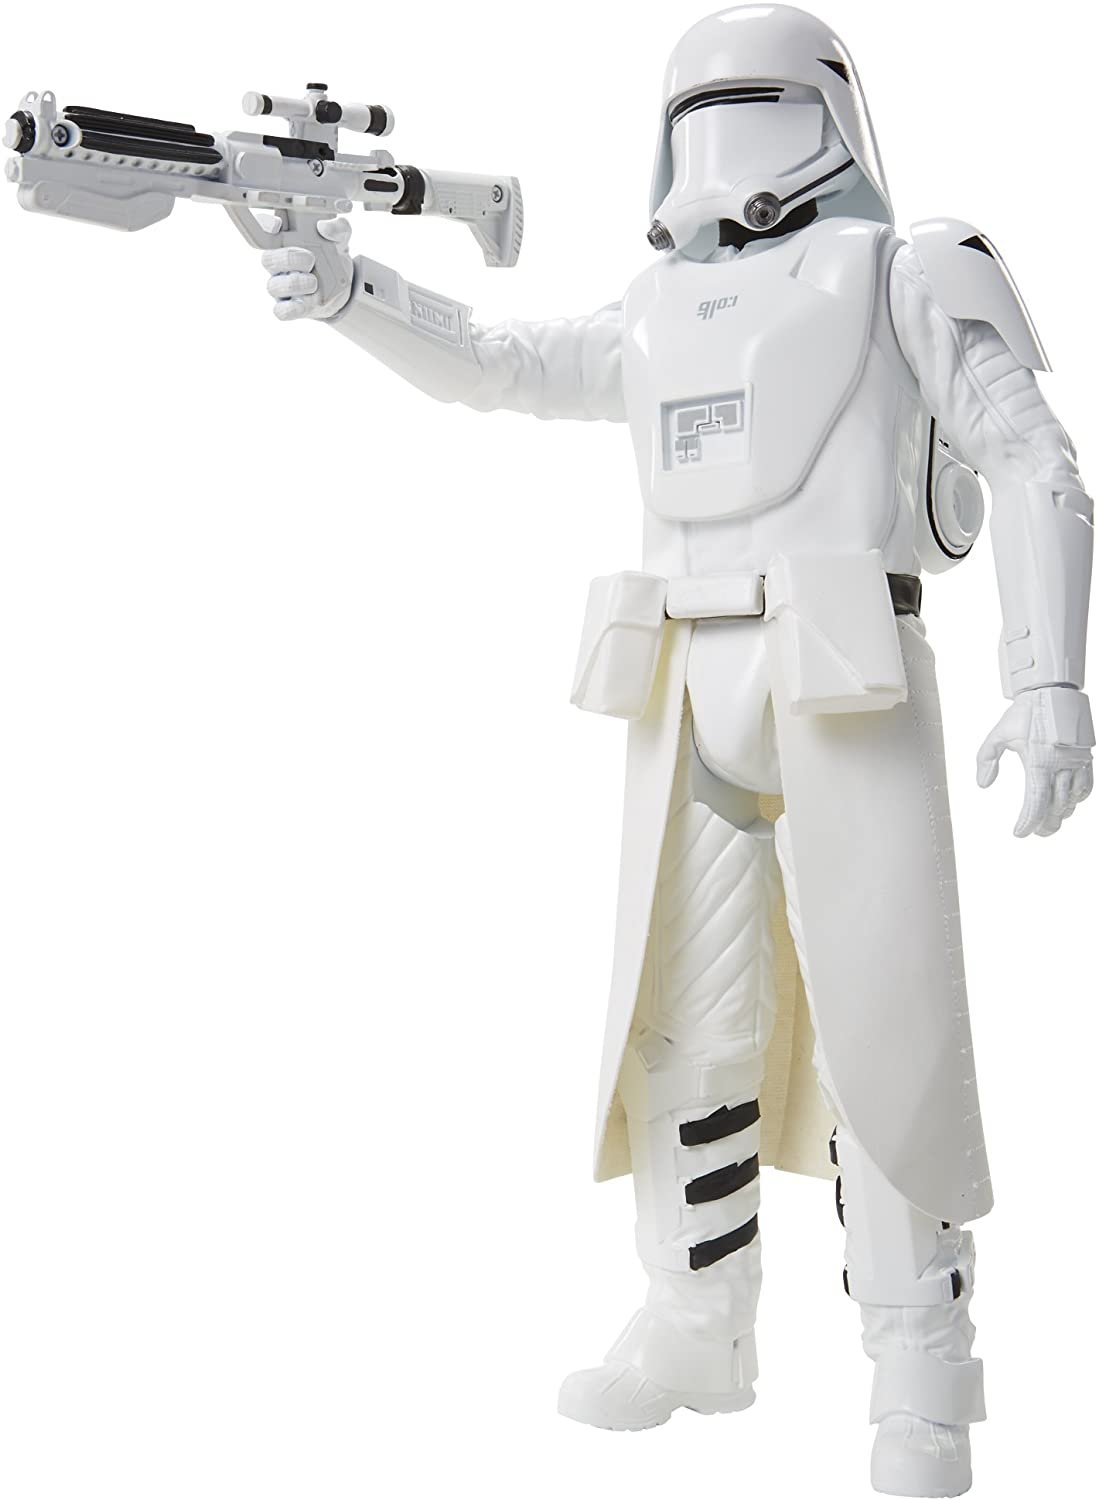 Snowtrooper 45cm figura de acción con arma Star Wars 90829 en OVP/nuevo # s540 